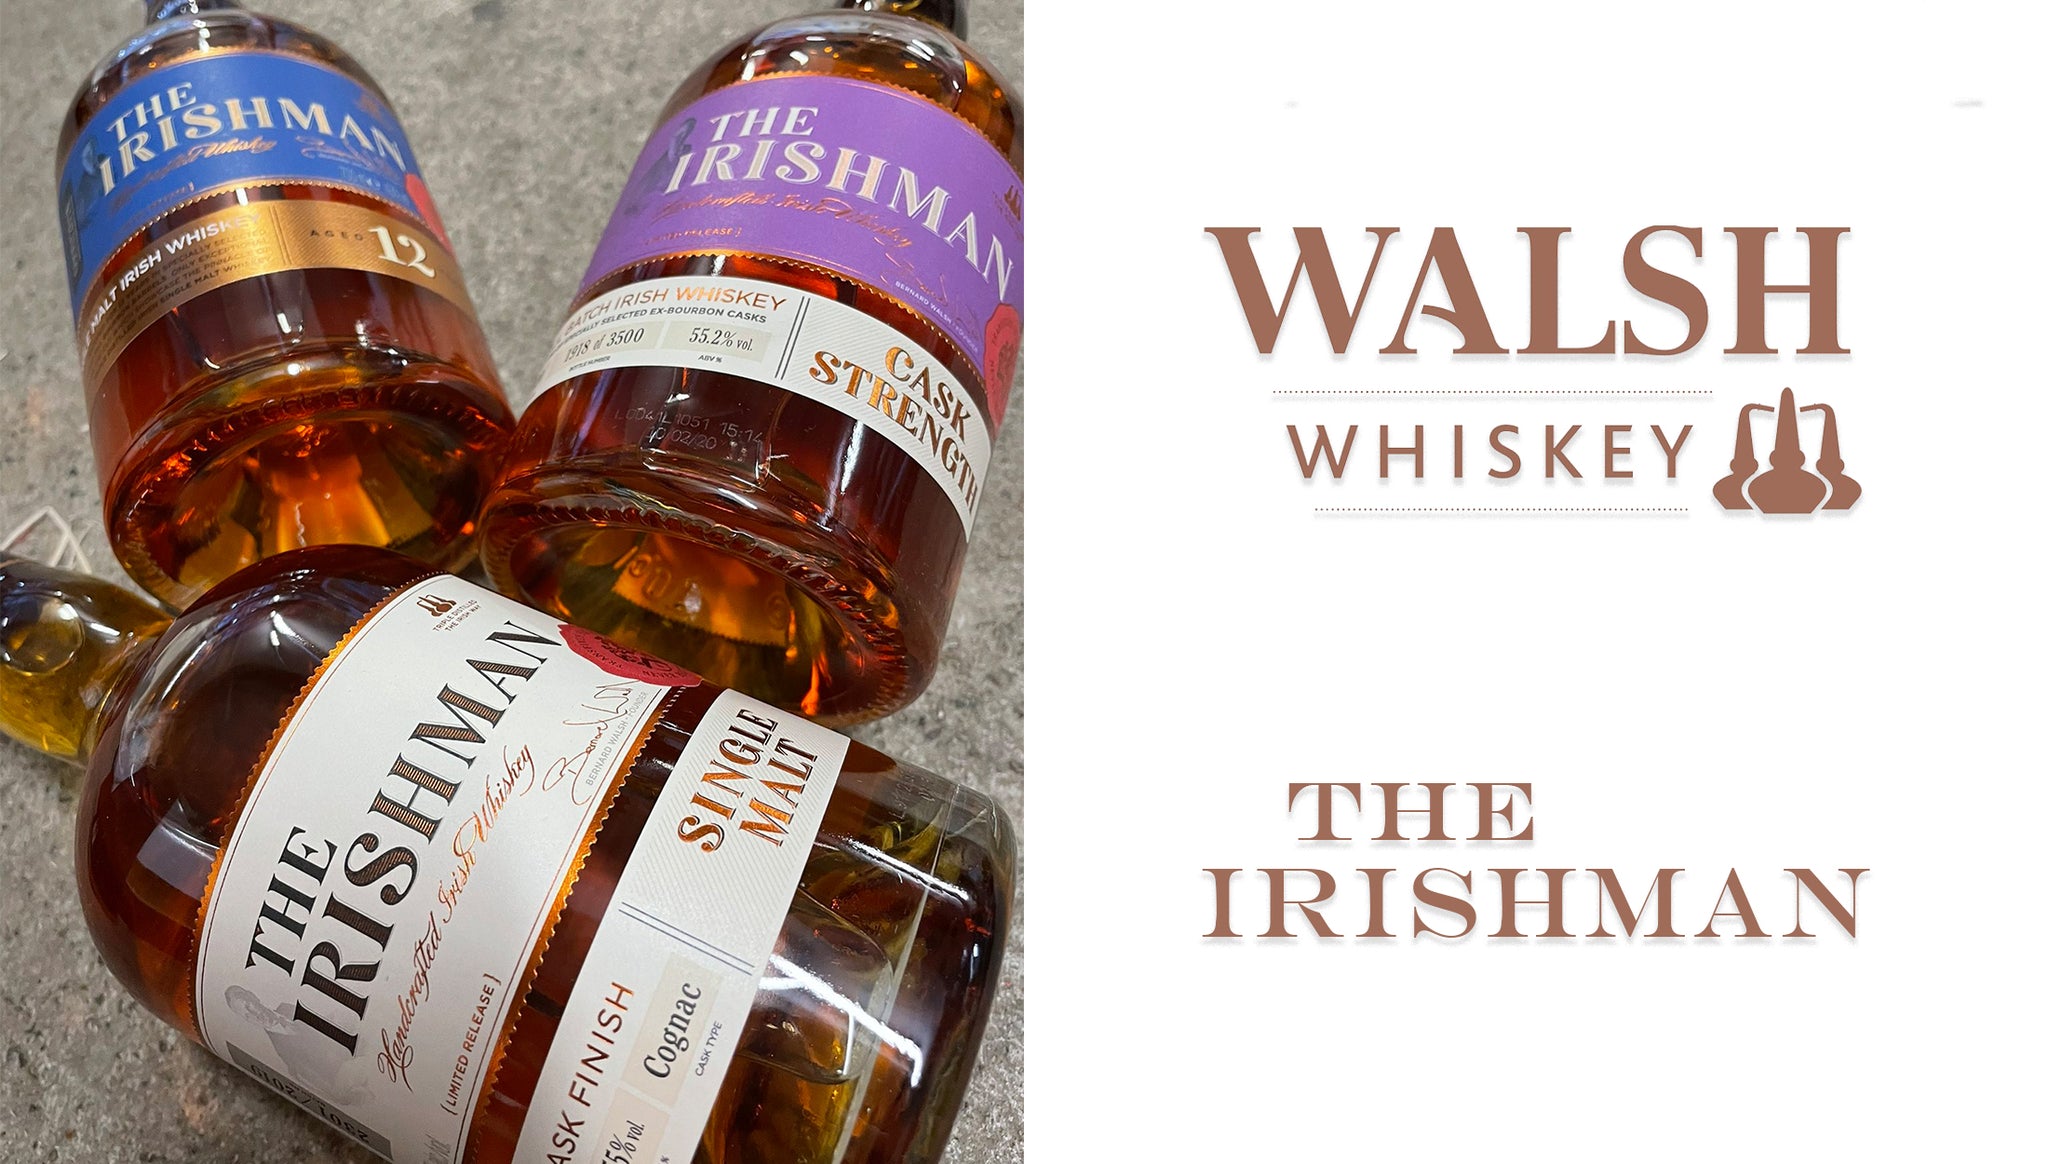 The Irishman Irish Whiskey